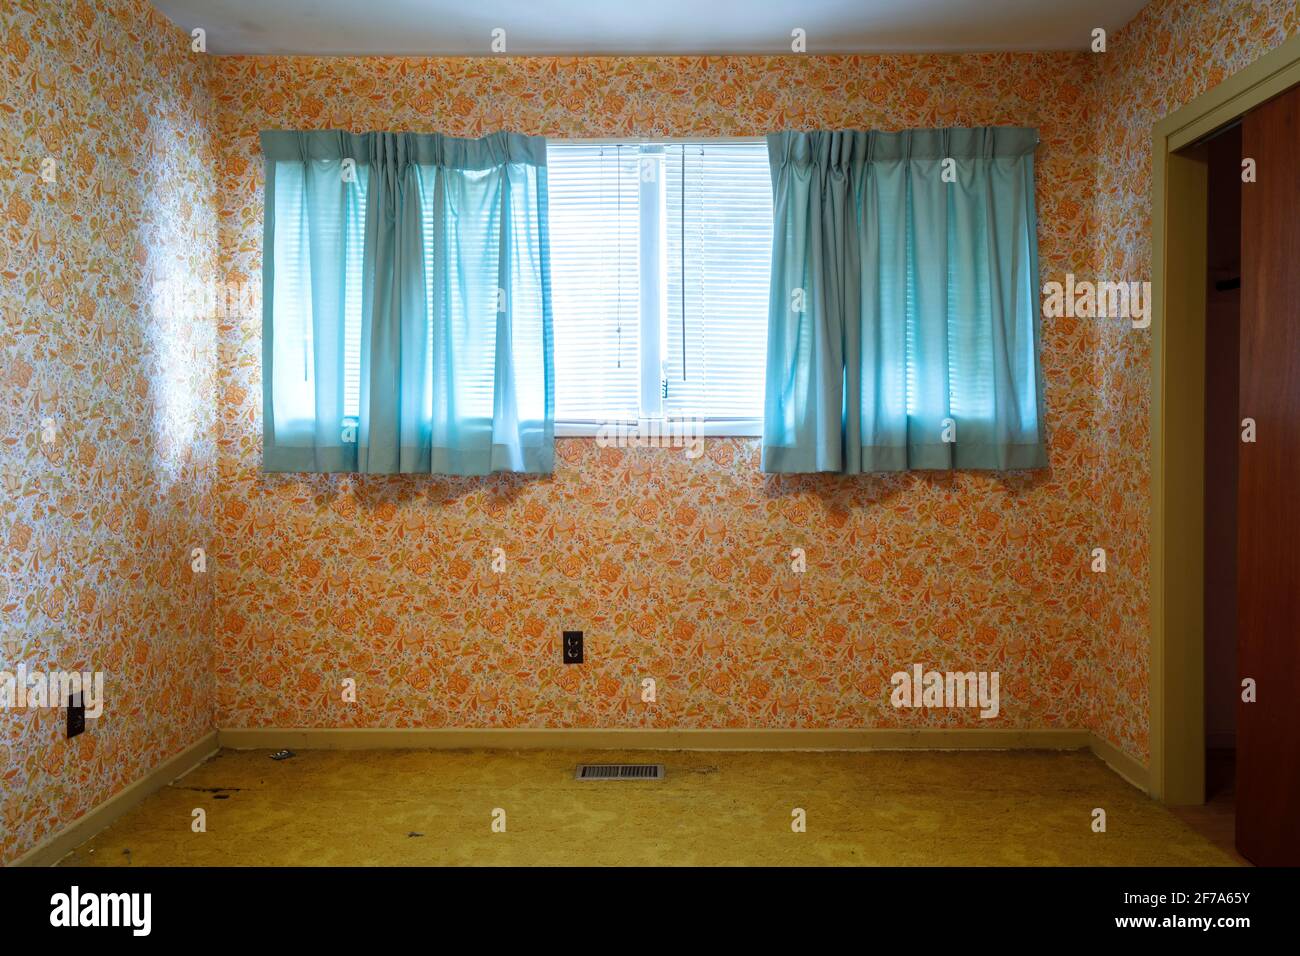 Papier peint rétro orange et rideaux bleus contrastés dans une chambre vide. Banque D'Images